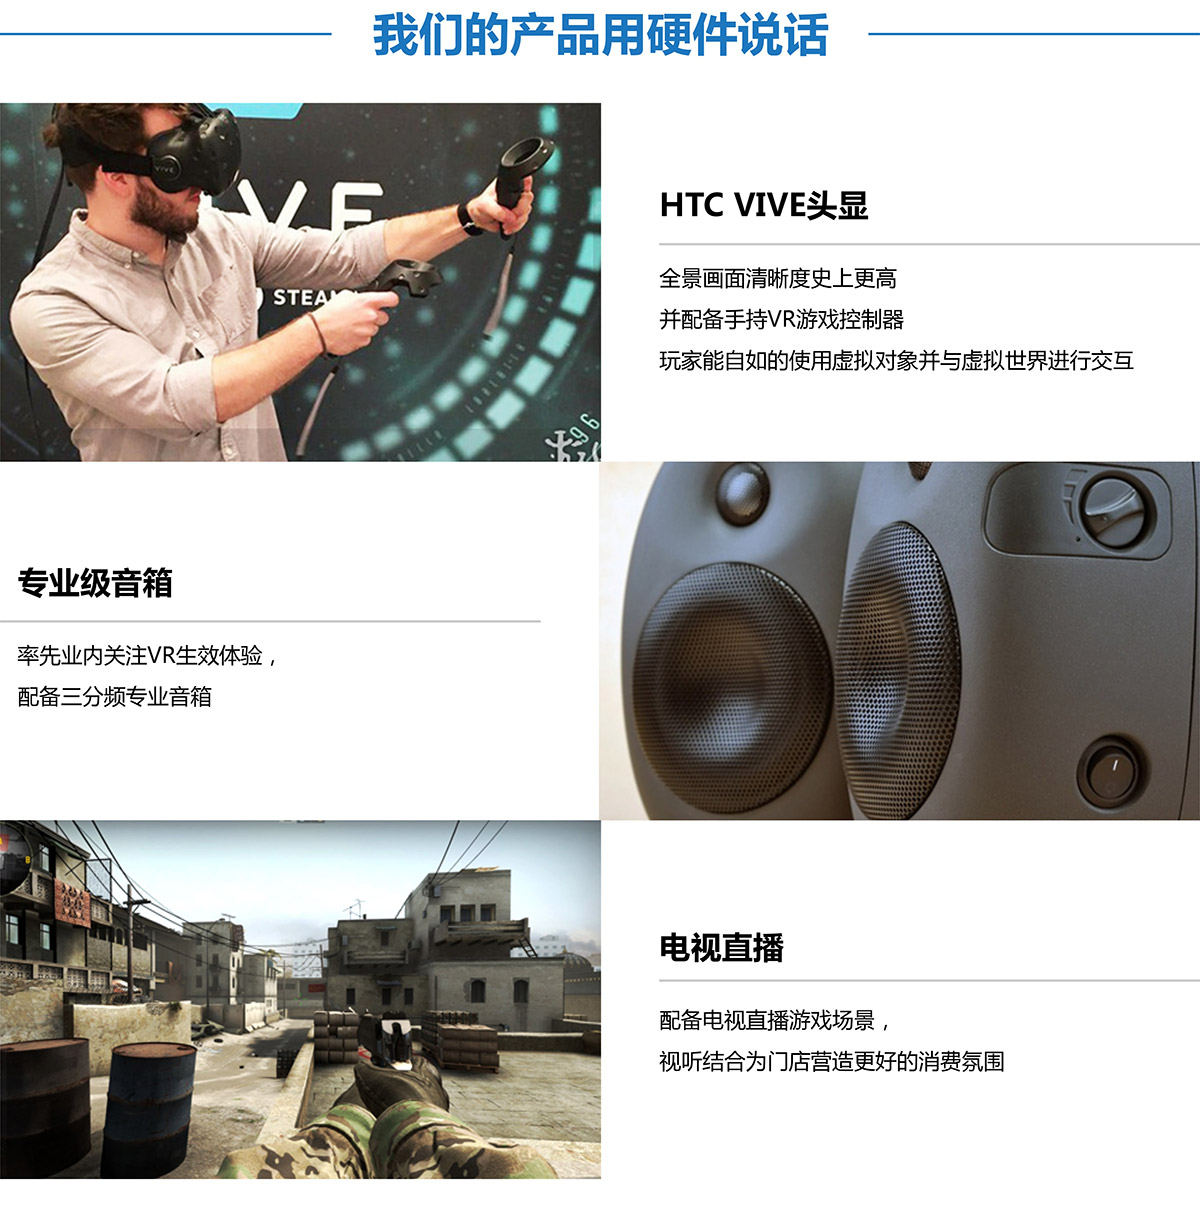 四川VR探索用硬件说话.jpg